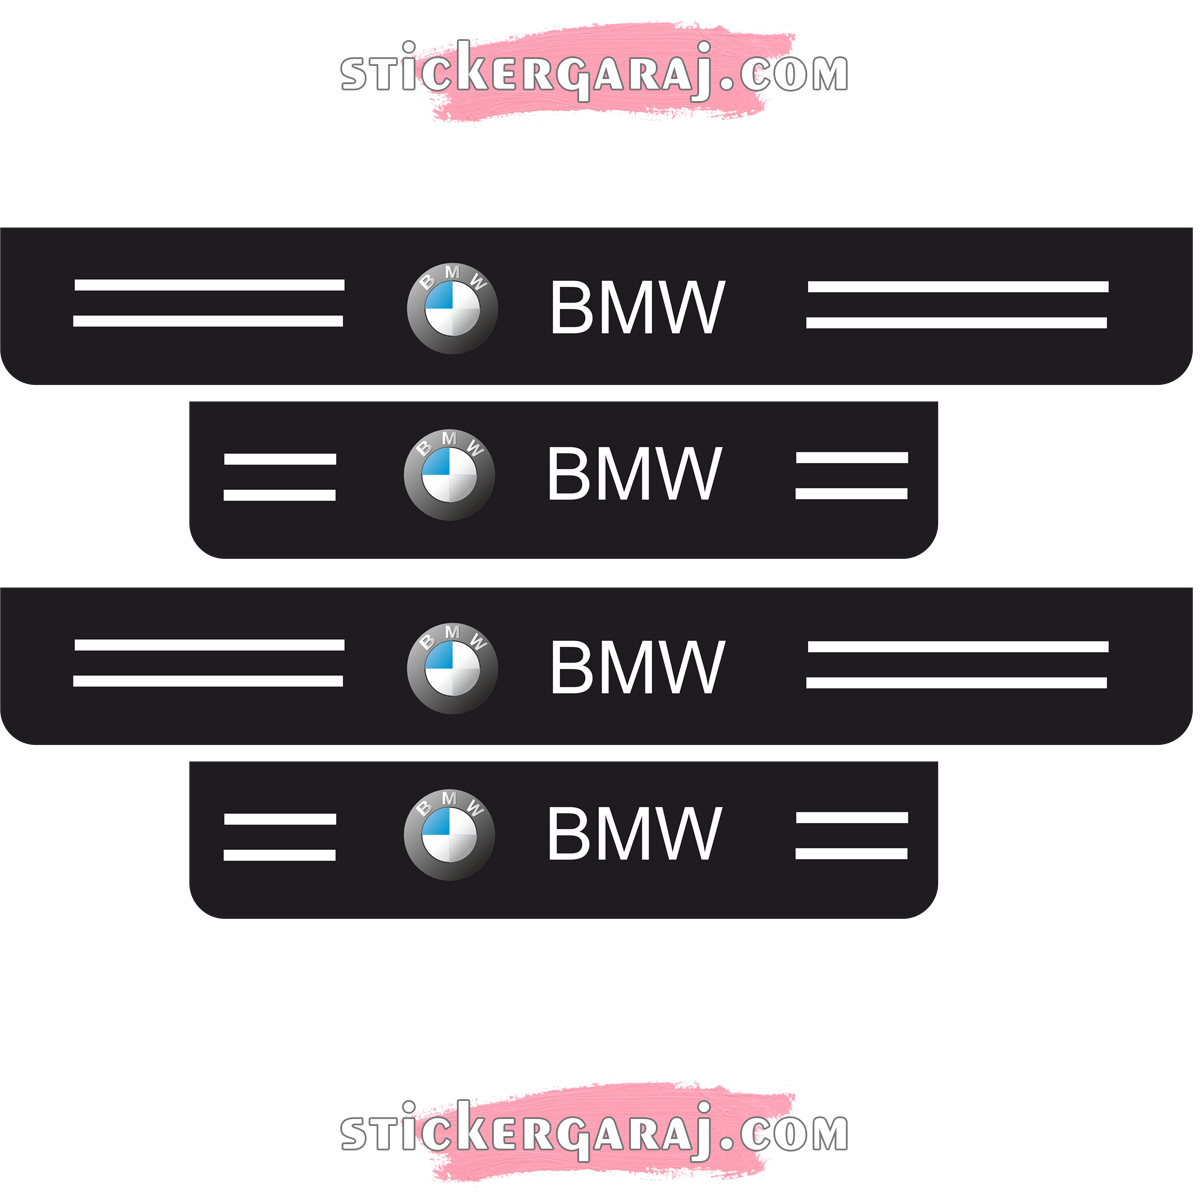 BMW kapi esigi 2 - Bmw kapı eşiği sticker